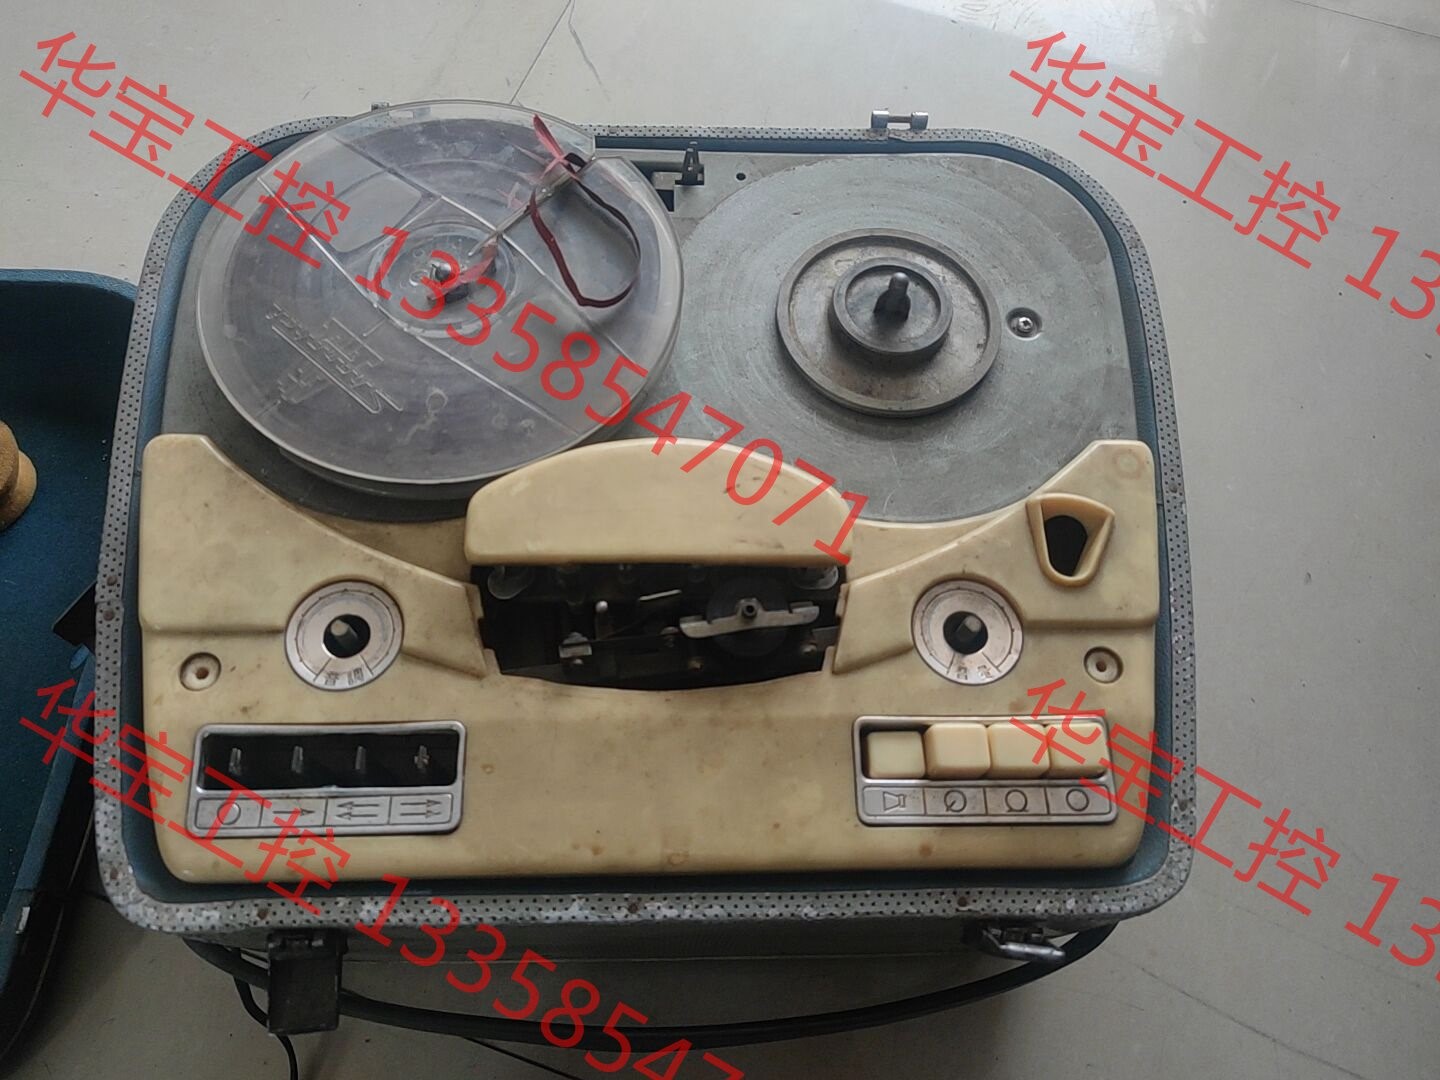 议价 L601开盘机 上海录音器材厂 收来的 成色见图 好坏不知